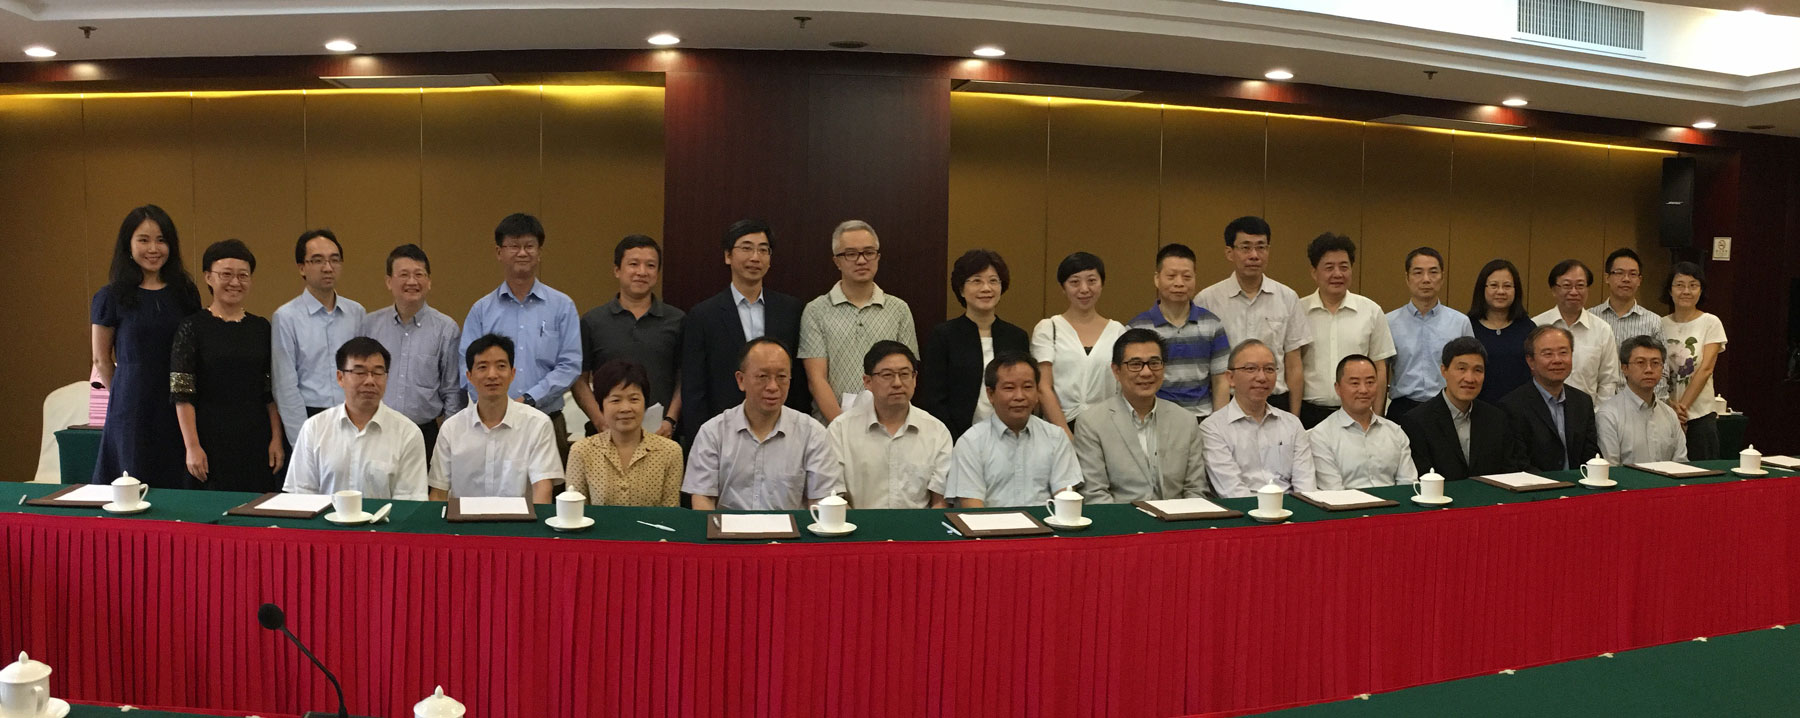 粤港信息化合作专责小组第十三次会议全体人员合照